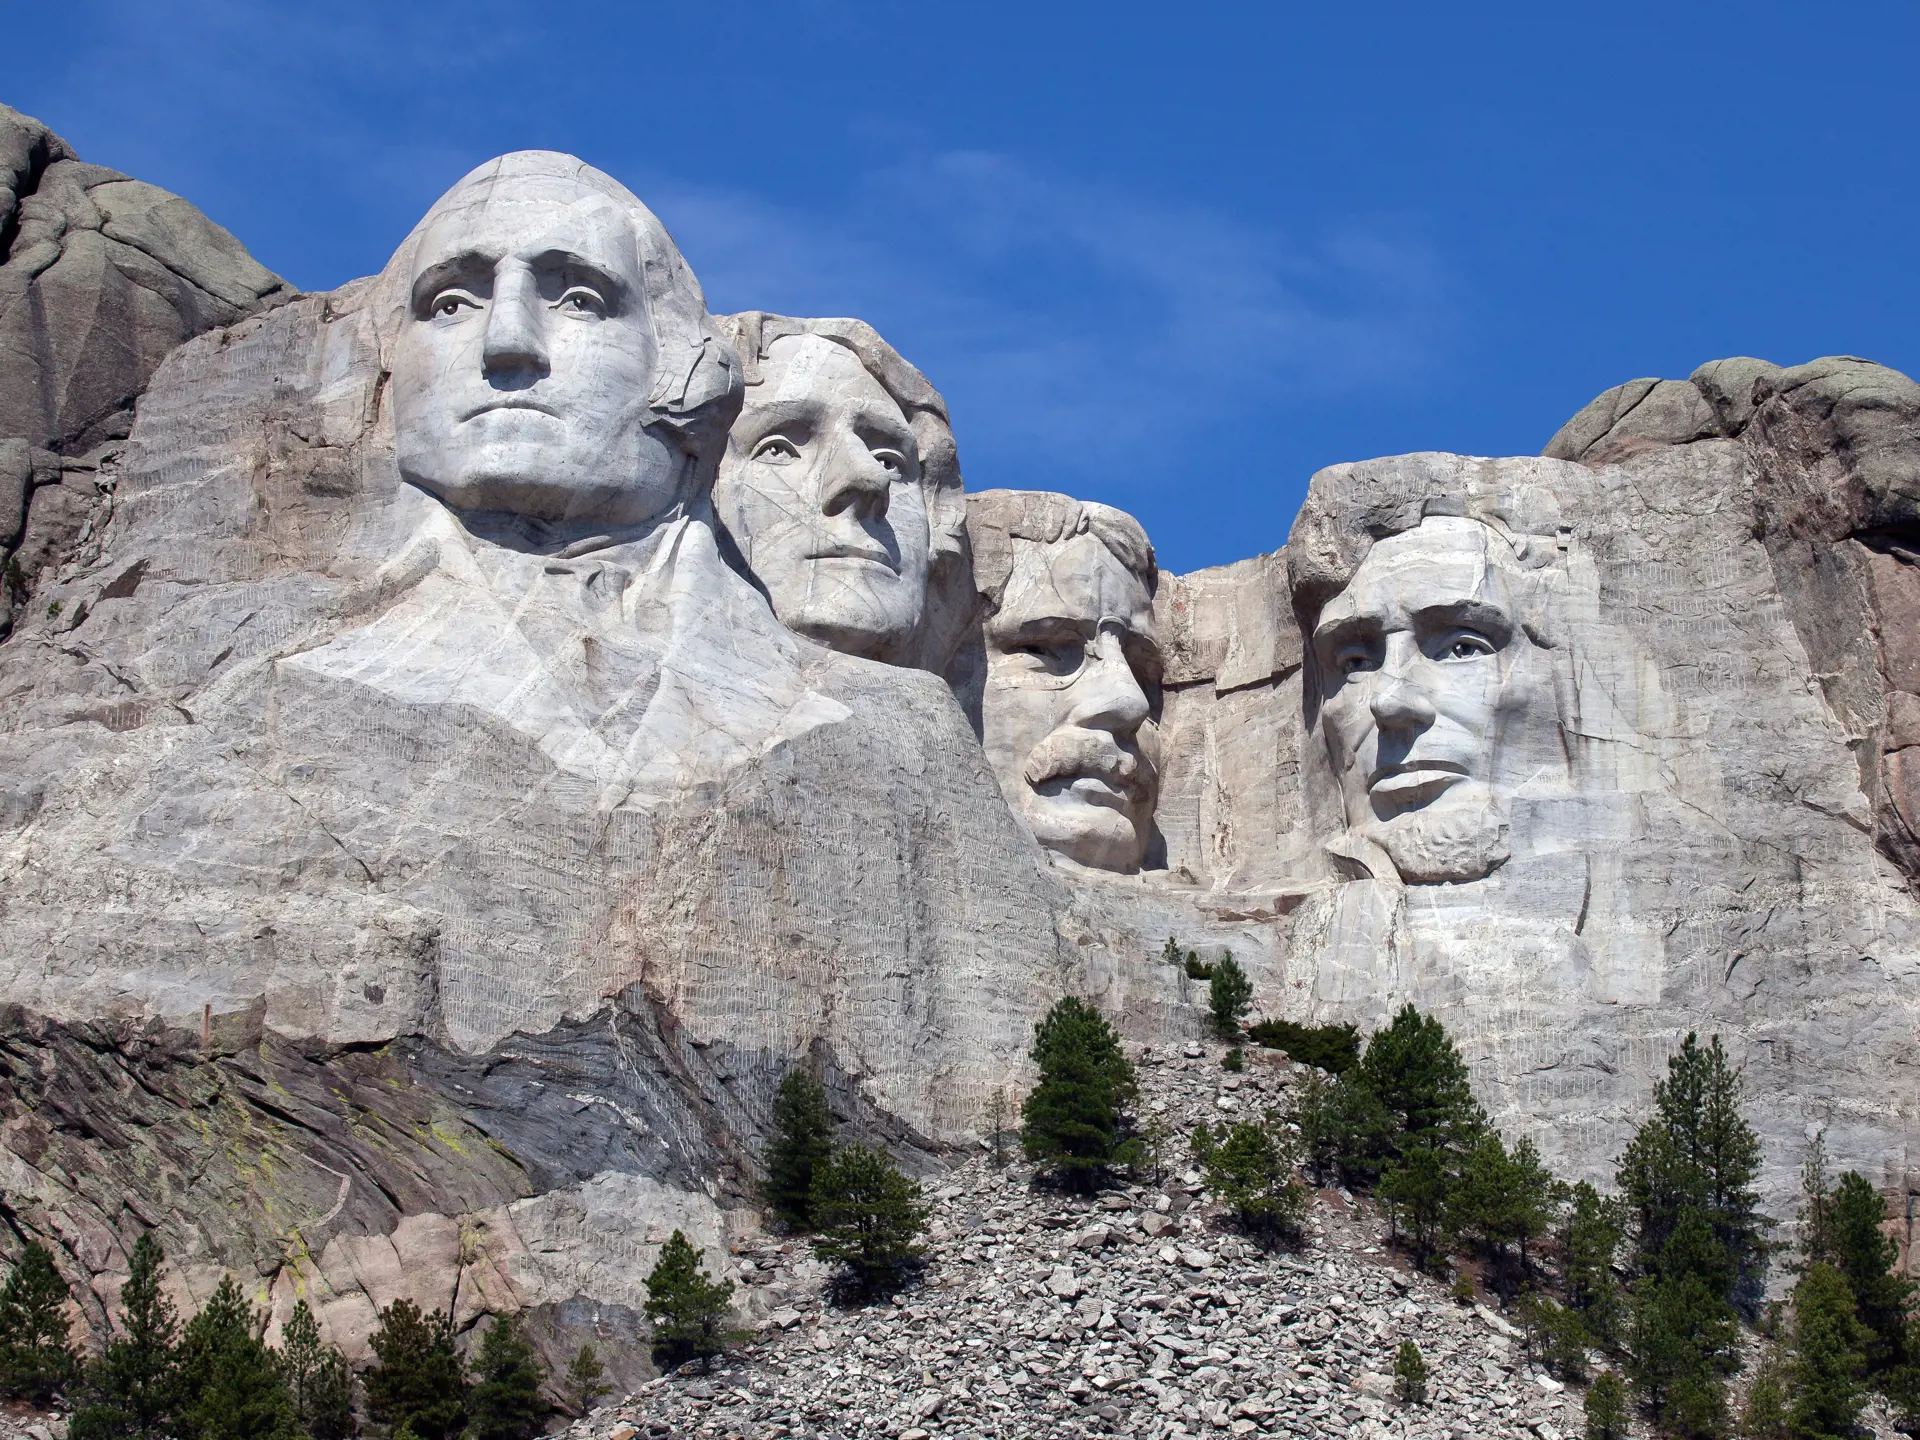 MOUNT RUSHMORE - de fire enorme præsidenter er vel nok et af de mest spektakulære af de menneskeskabte nationale monumenter i USA, Check Point Travel